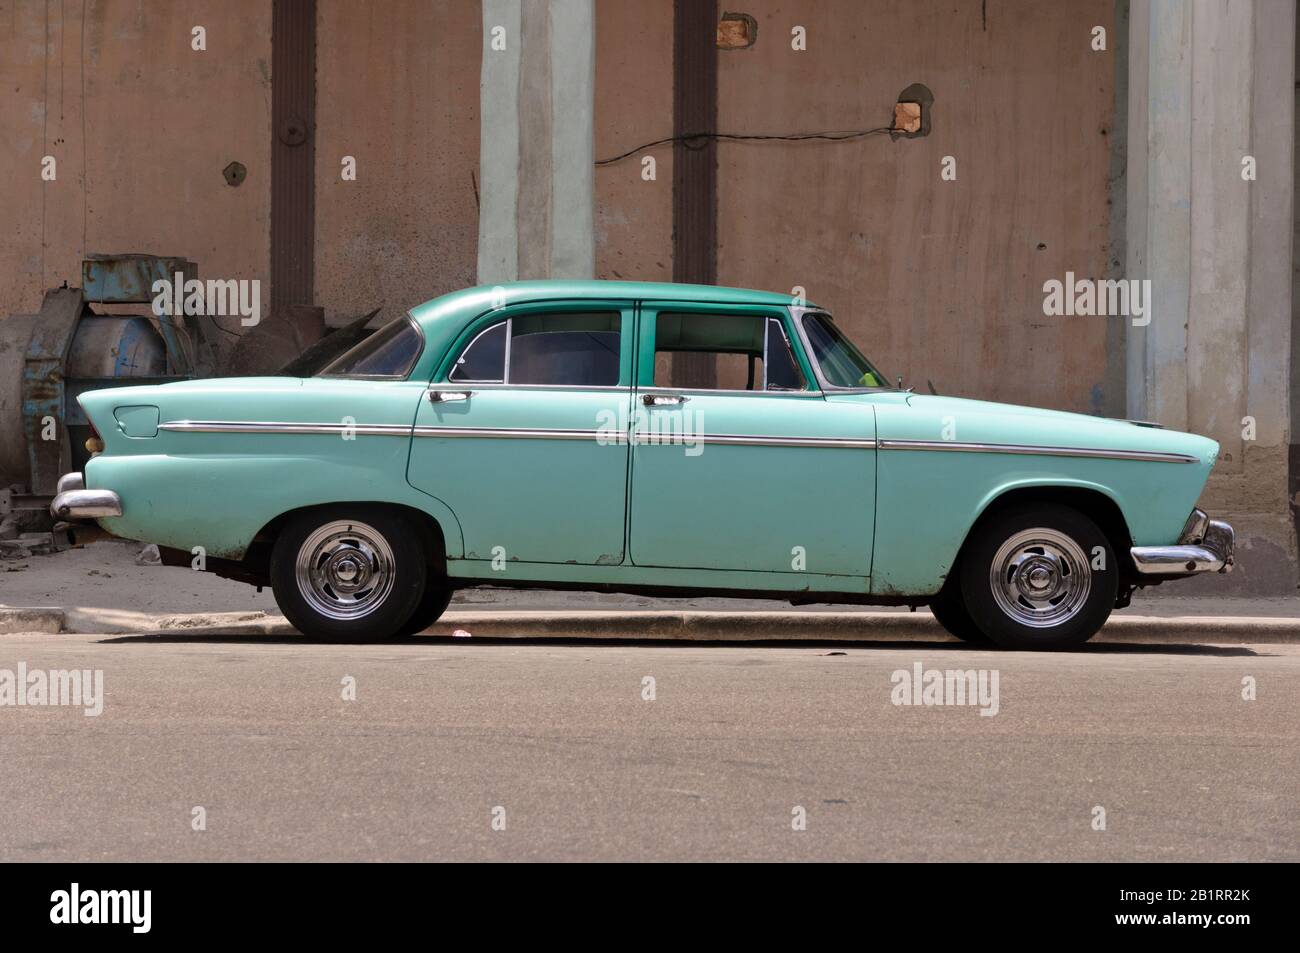 Green classic car, Havana, Cuba, Caribbean, Stock Photo